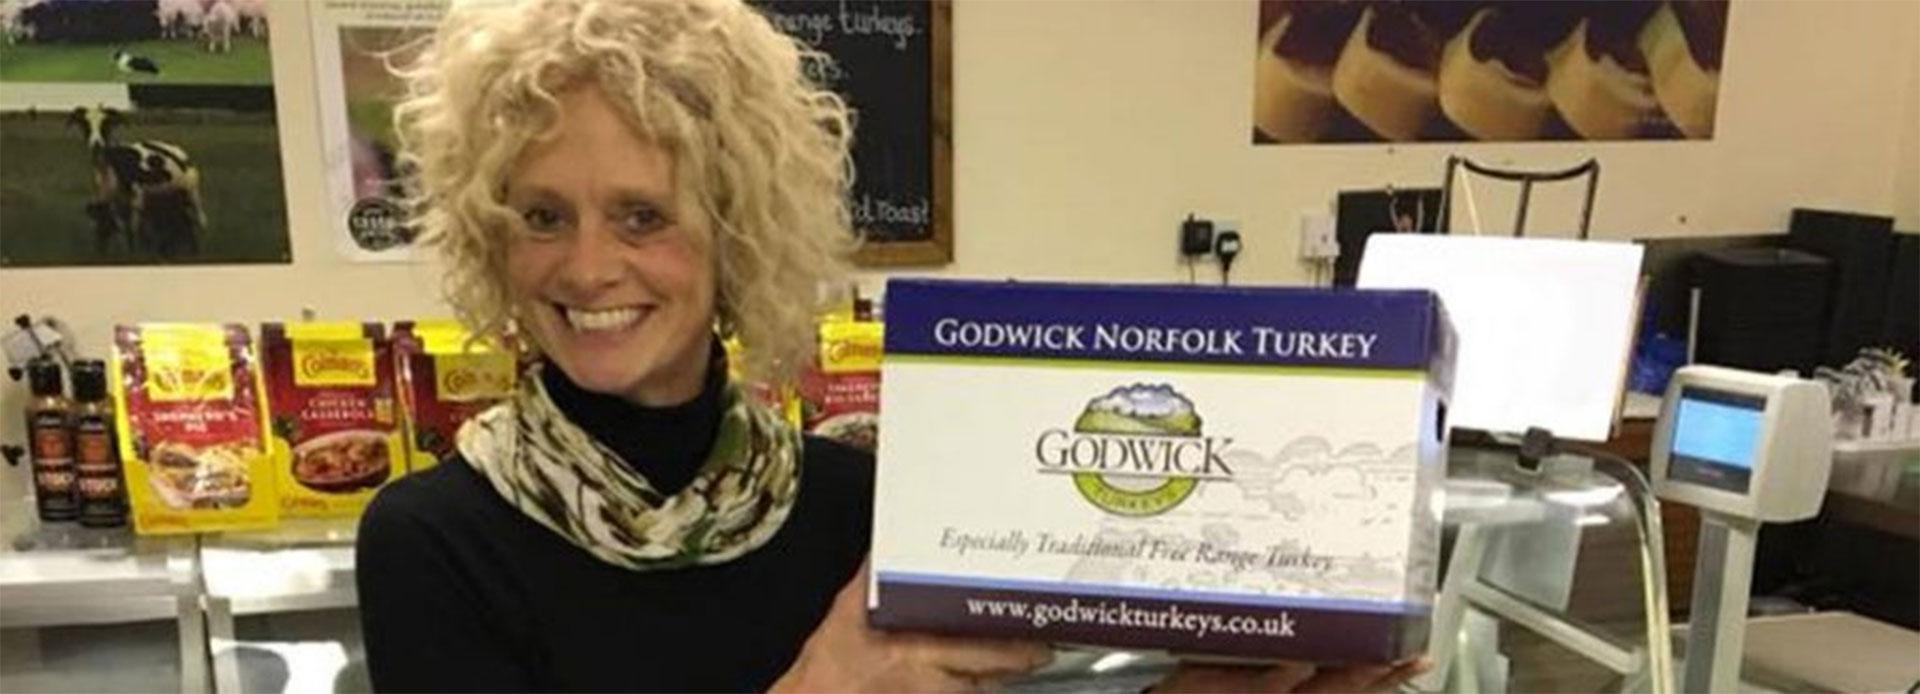 Judith Jaccobs with Godwick Norfolk Turkey